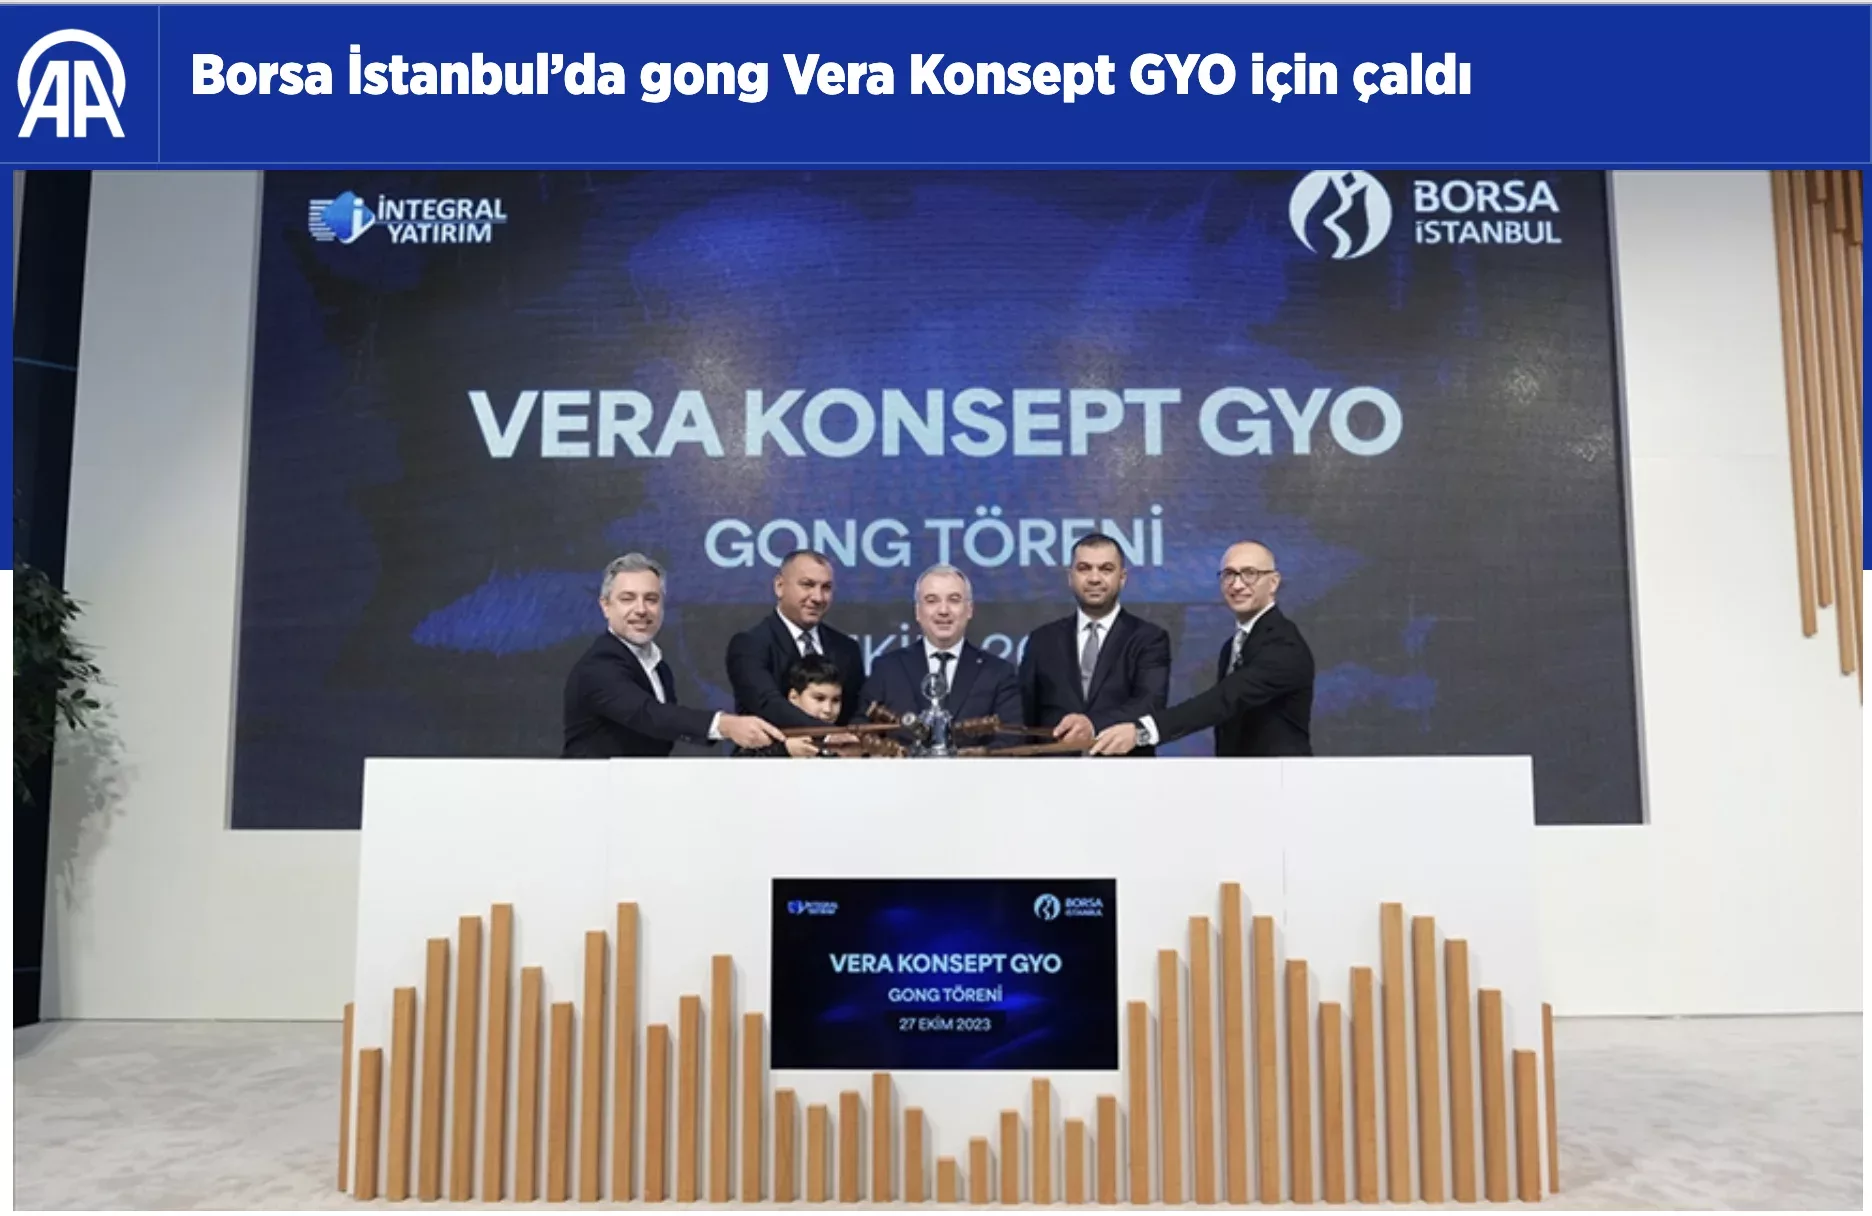 Borsa İstanbul'da gong Vera Konsept için çaldı